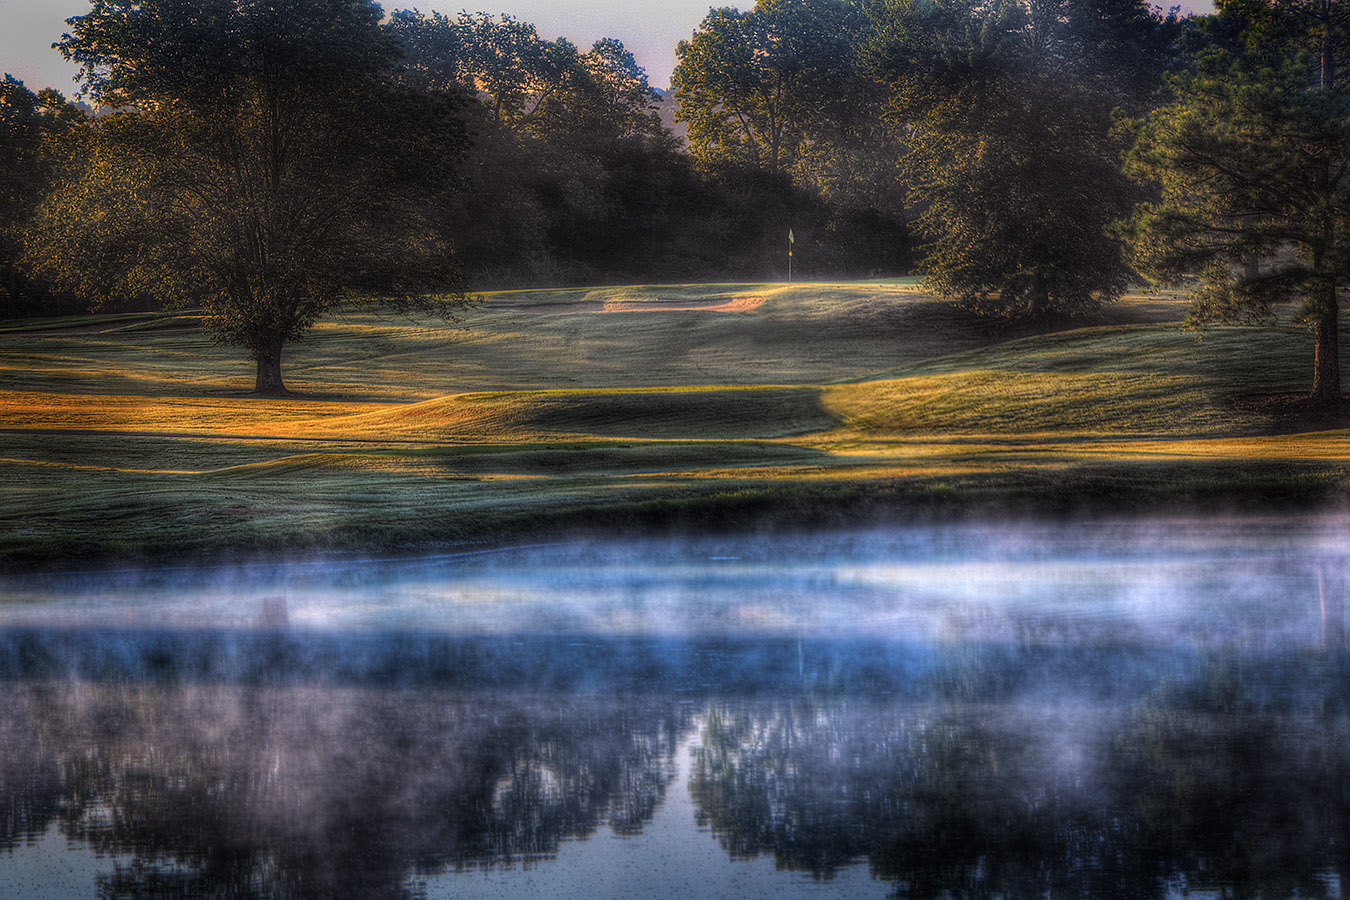 <span style="font-size:16px;">Nashville Golf 2nd Green</span> : Golf Landscapes : nick dantona fine art photography